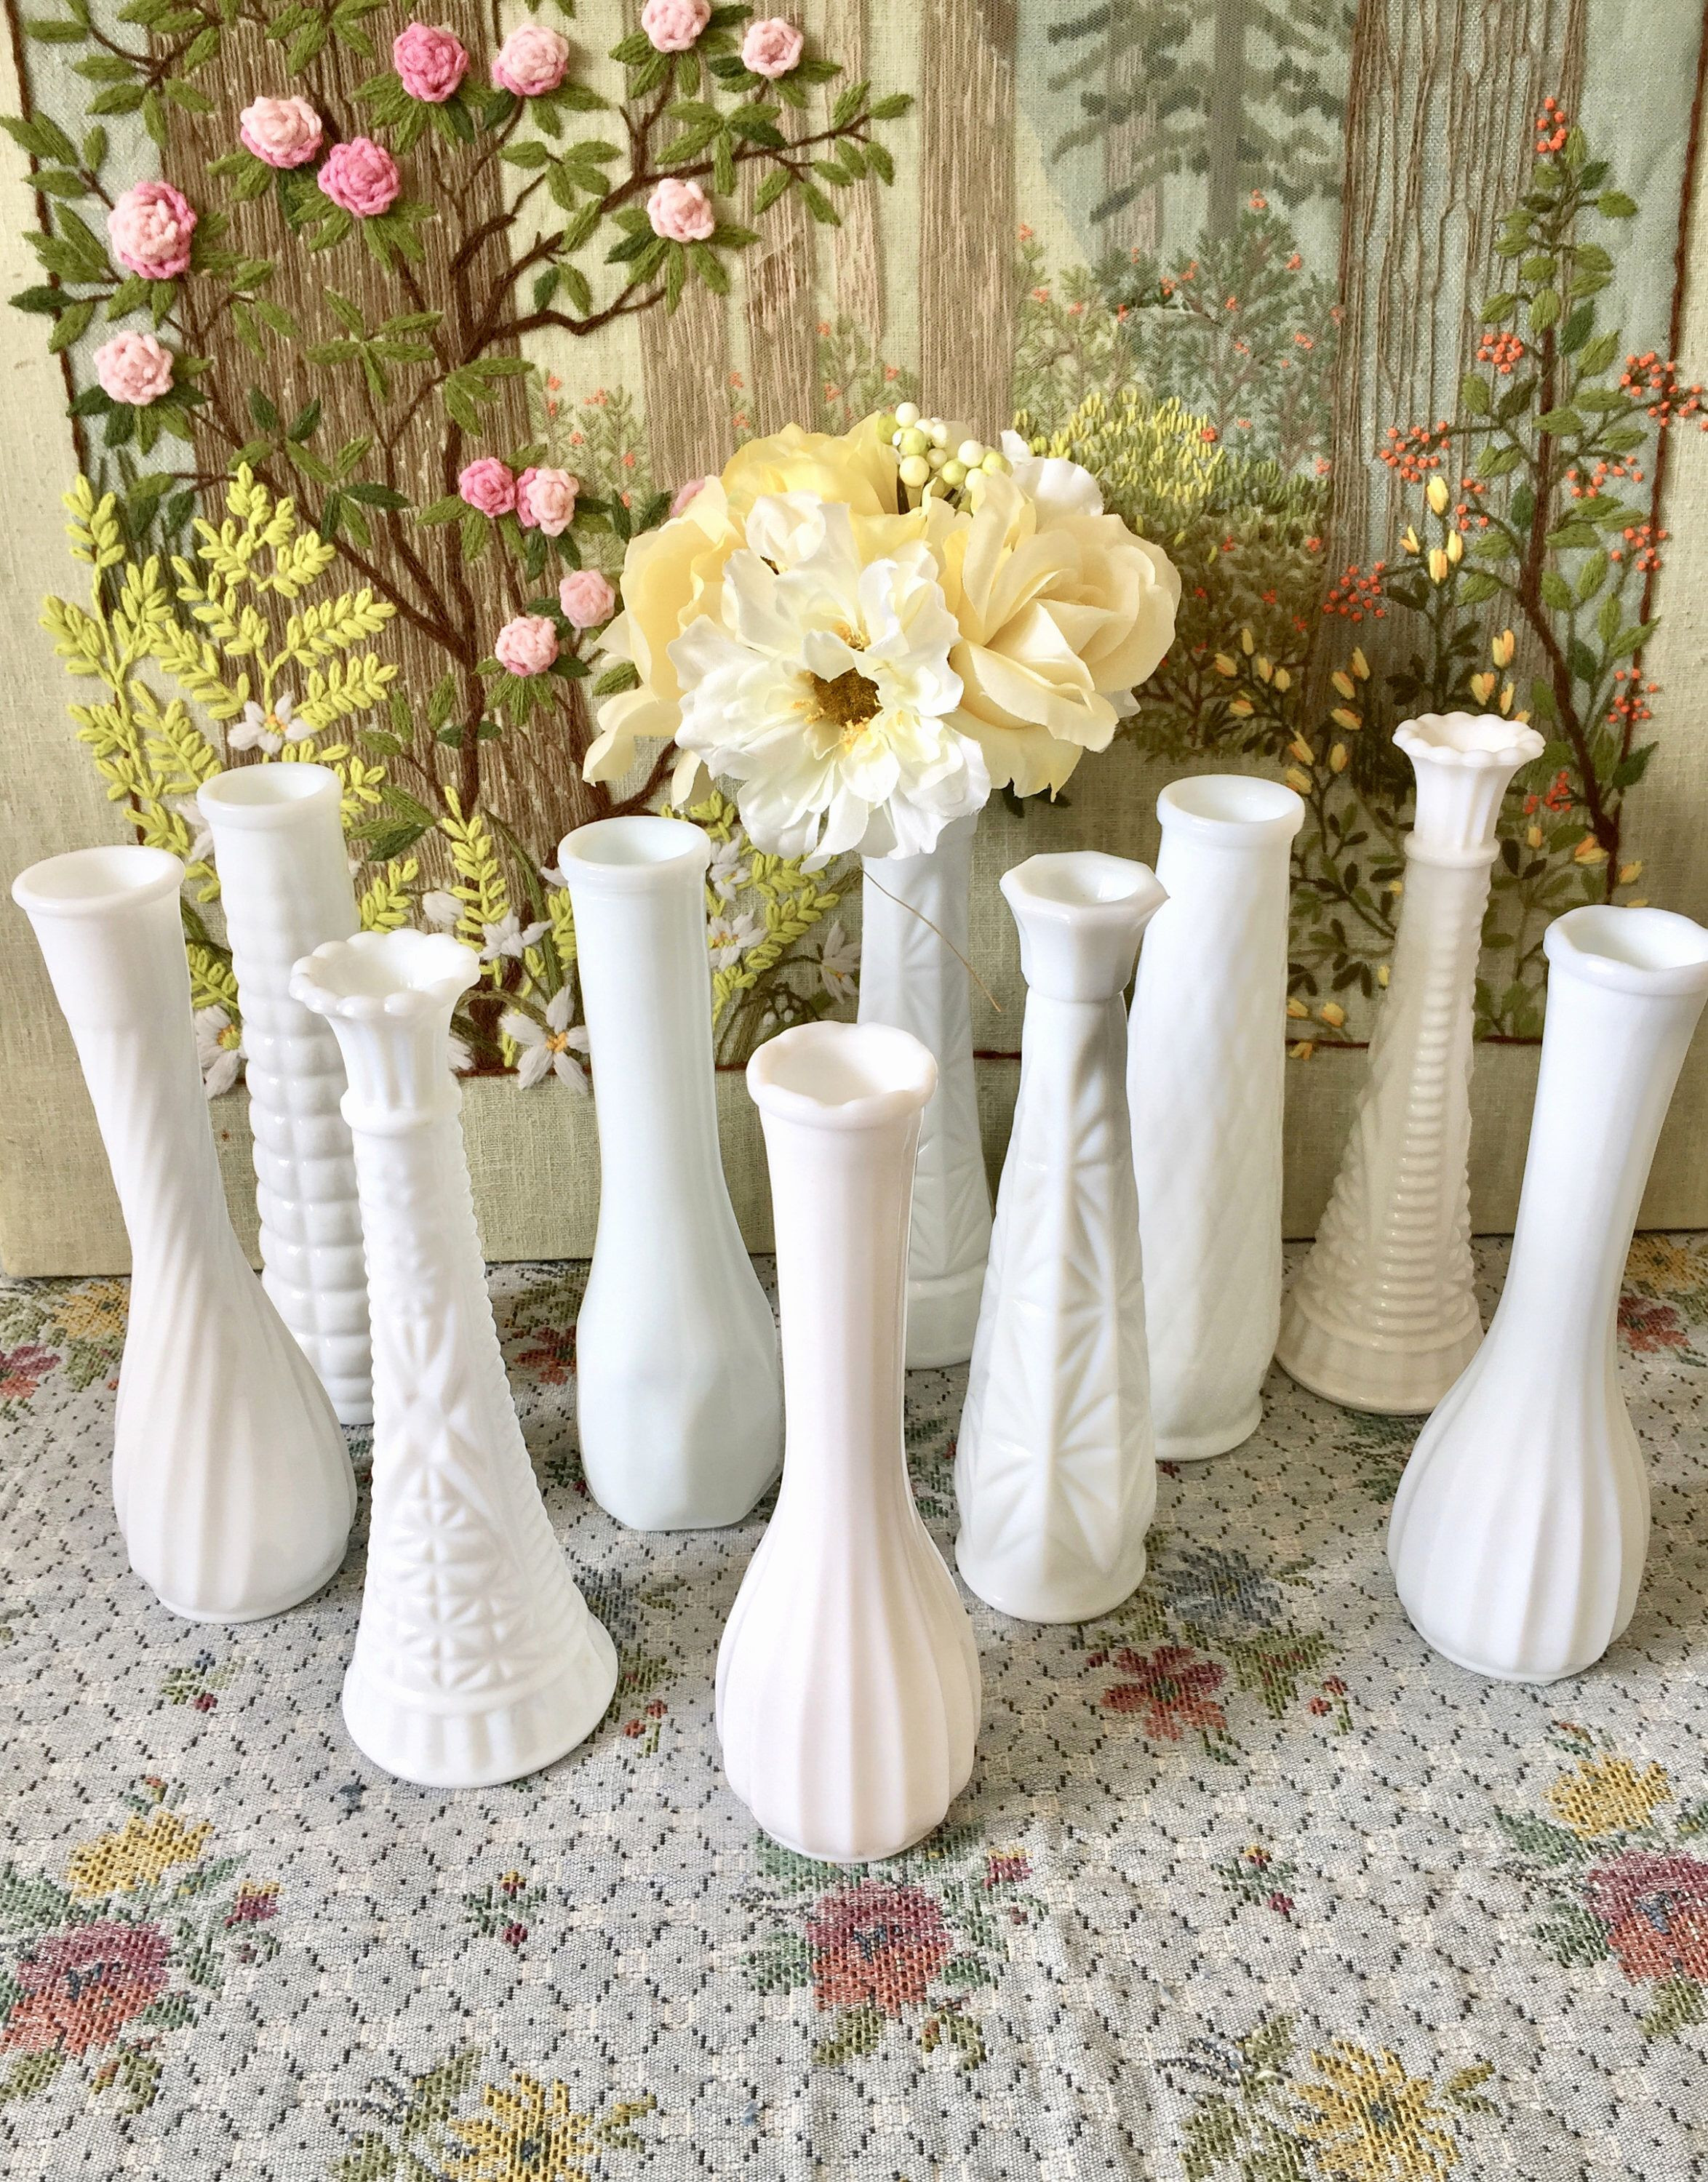 6 square glass vases bulk of 40 glass vases bulk the weekly world inside centerpiece vases in bulk vase and cellar image avorcor